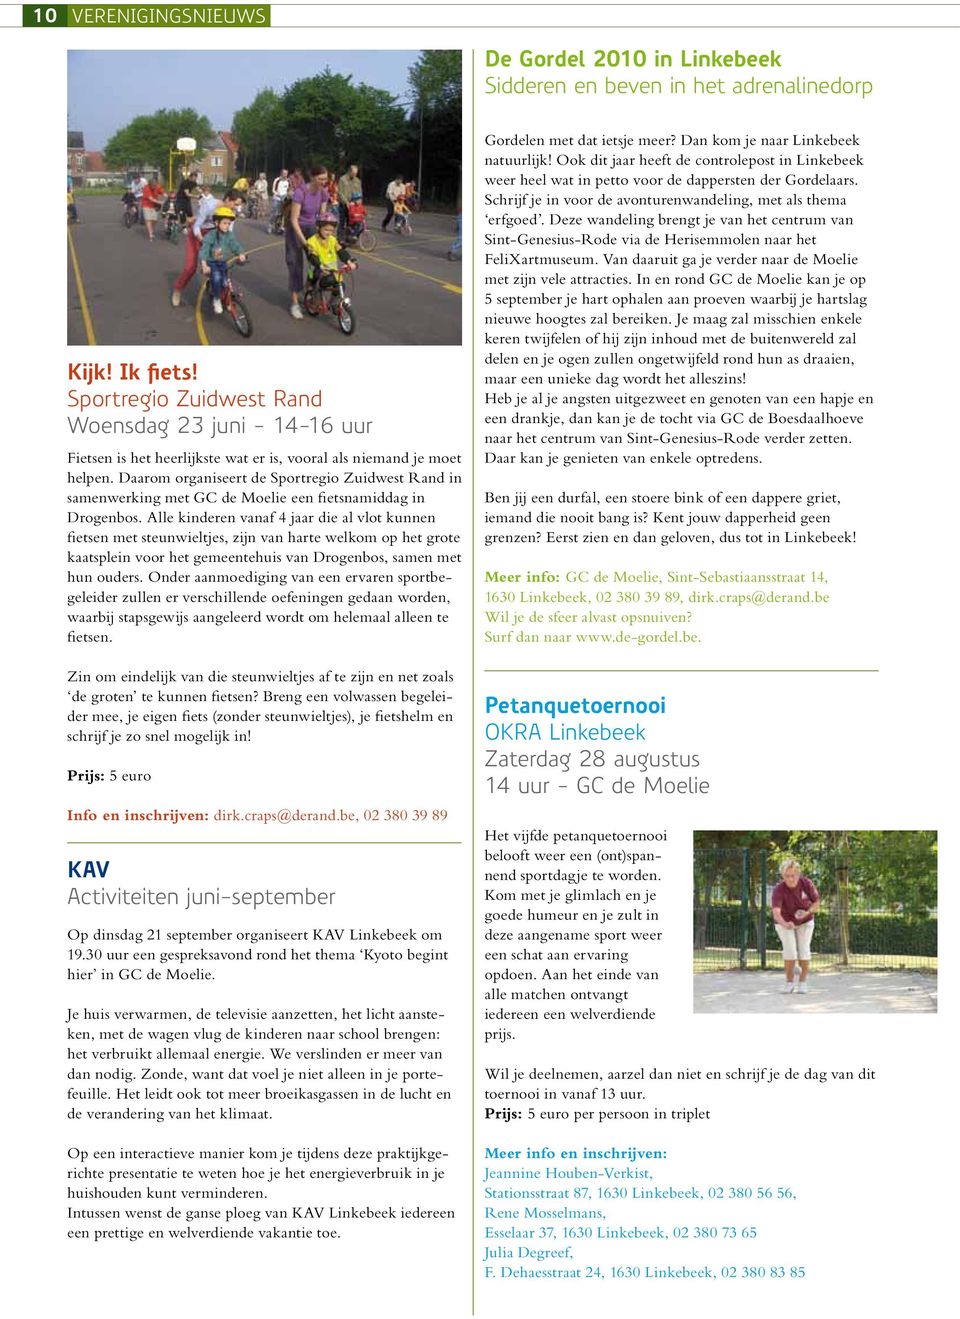 Daarom organiseert de Sportregio Zuidwest Rand in samenwerking met een fietsnamiddag in Drogenbos.